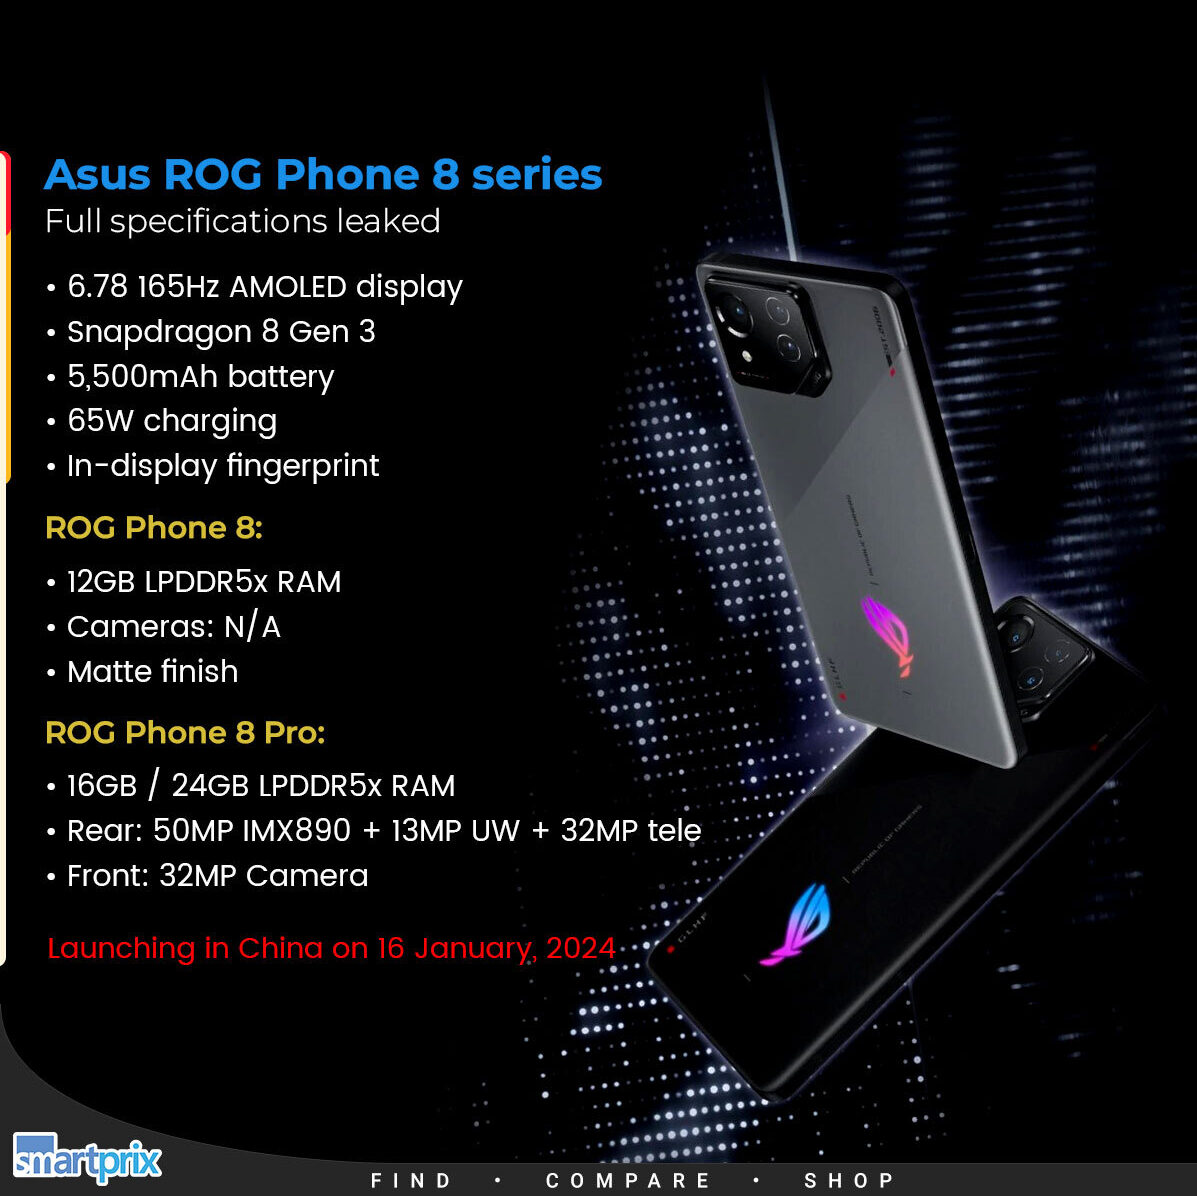 Asus ROG Phone 8 series